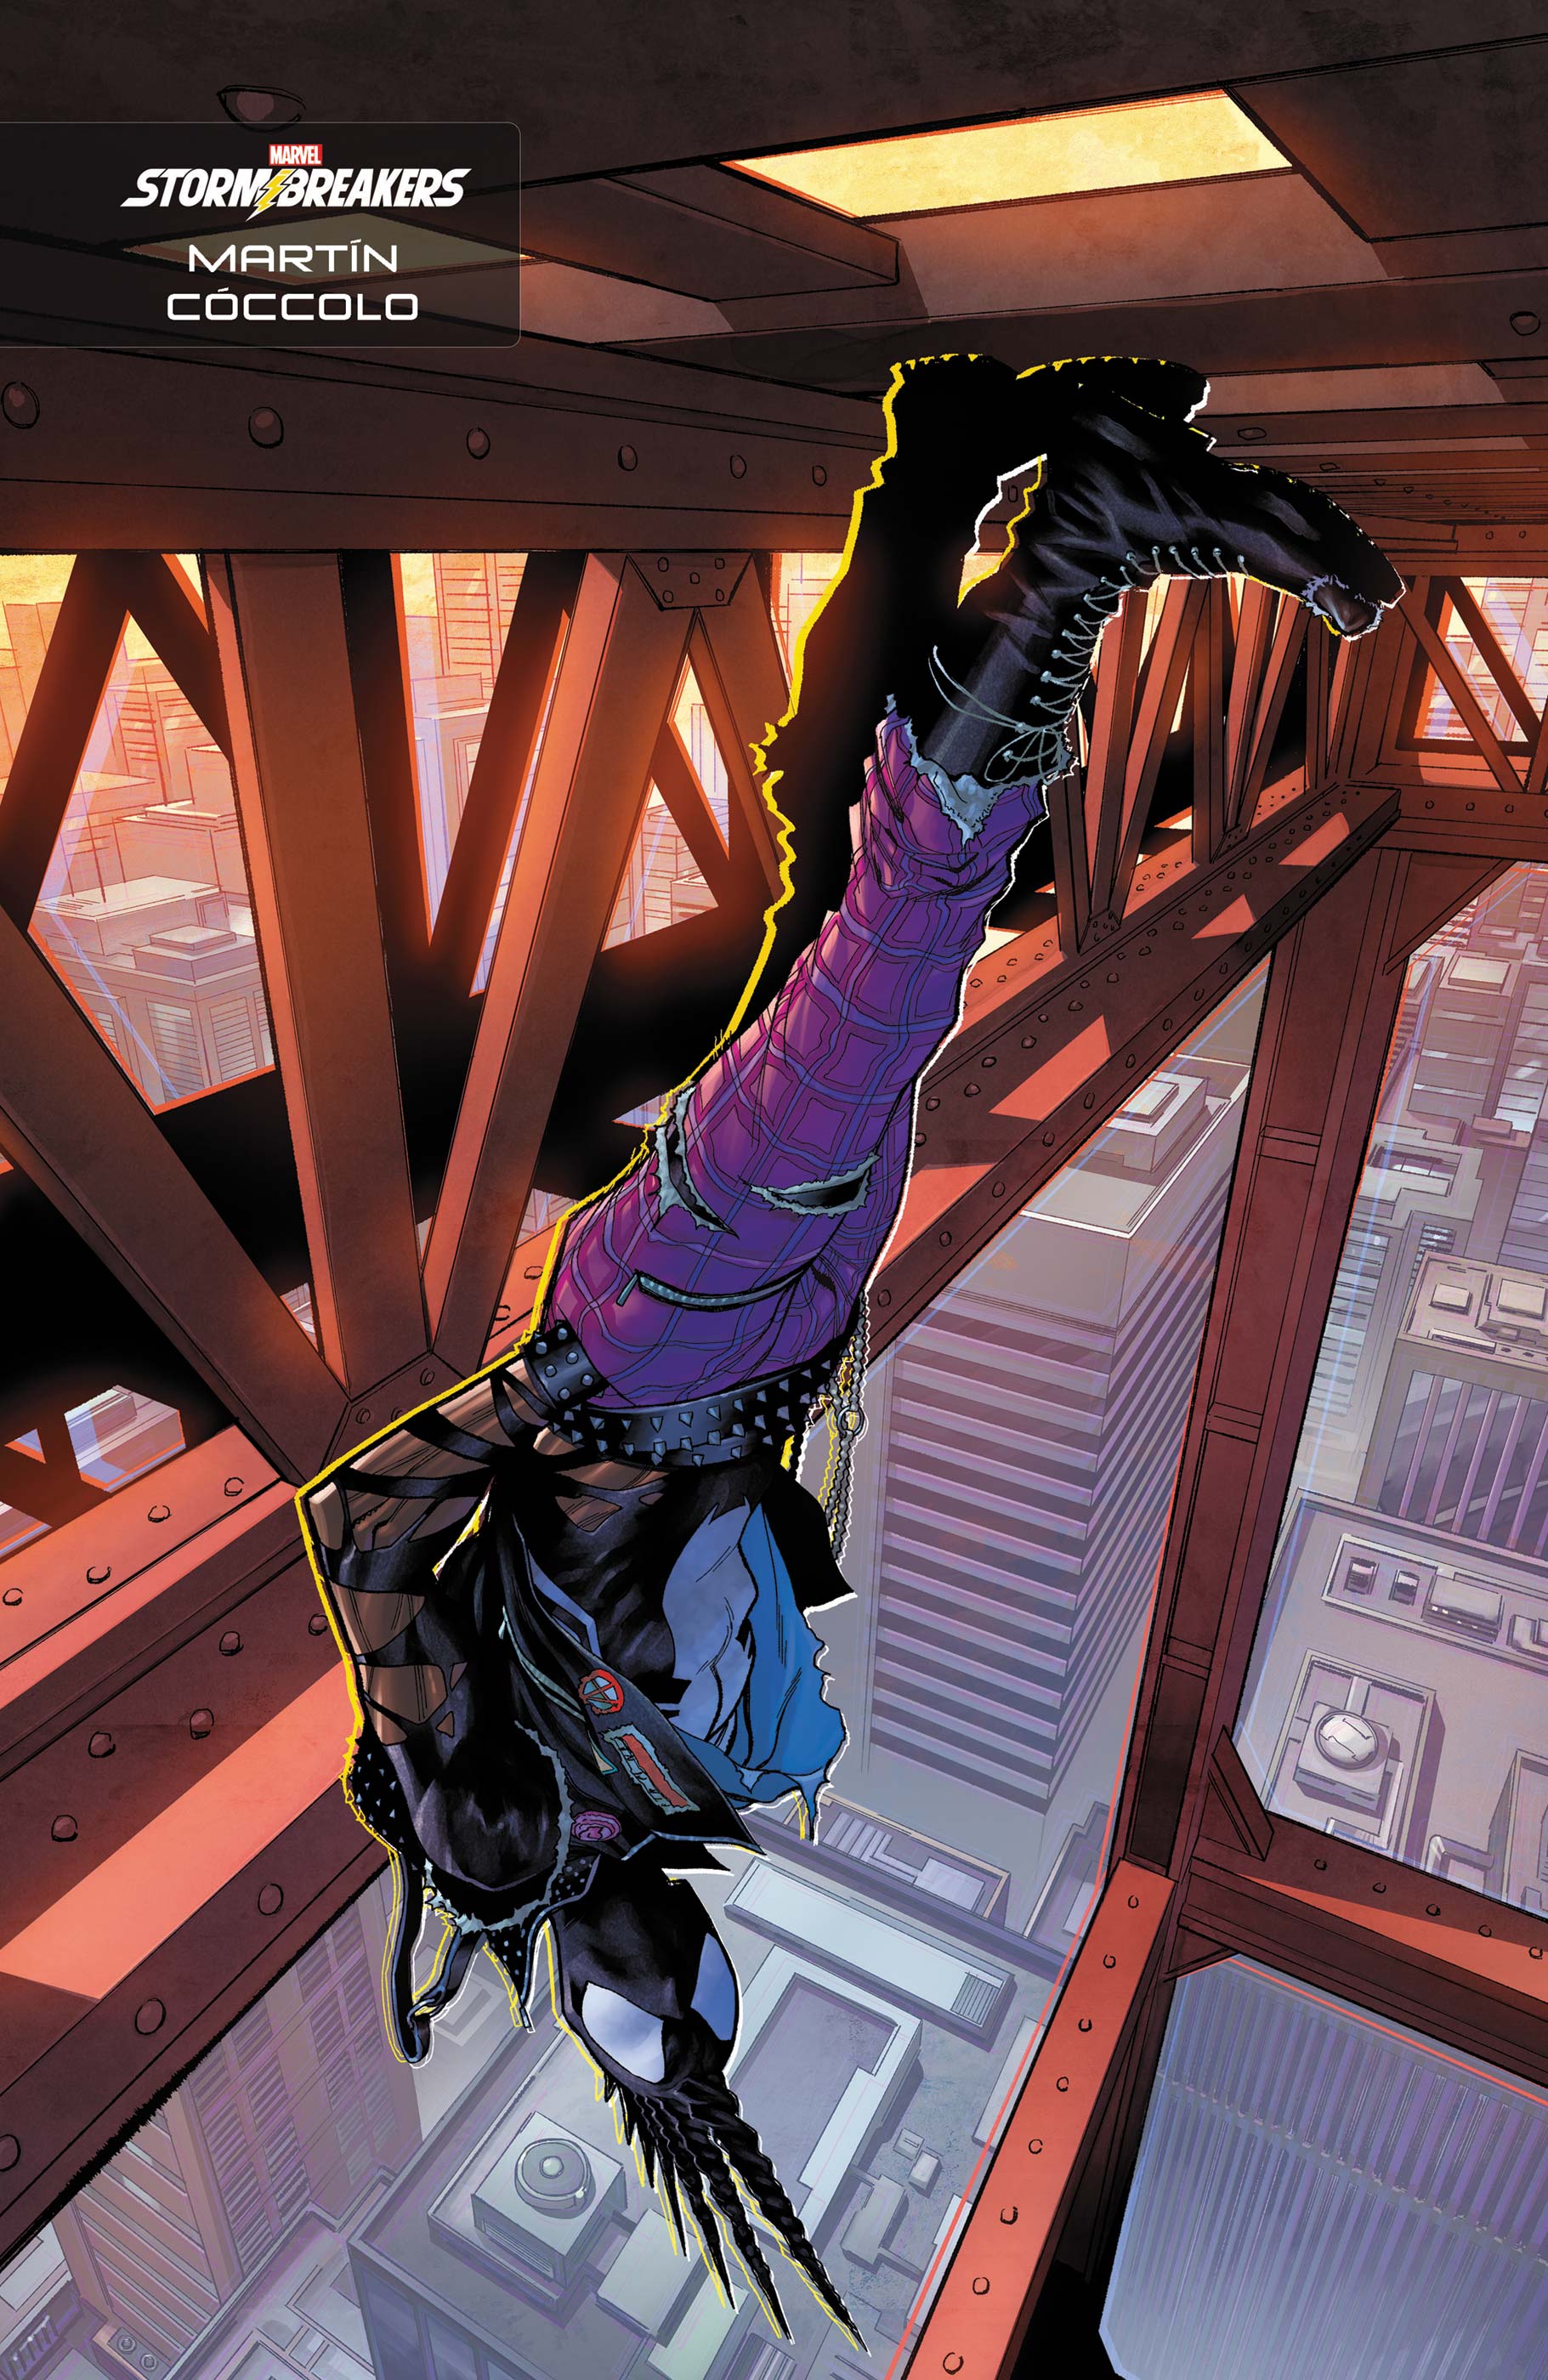 Symbiote Spider-Man 2099 (2024) #2 (Variant)